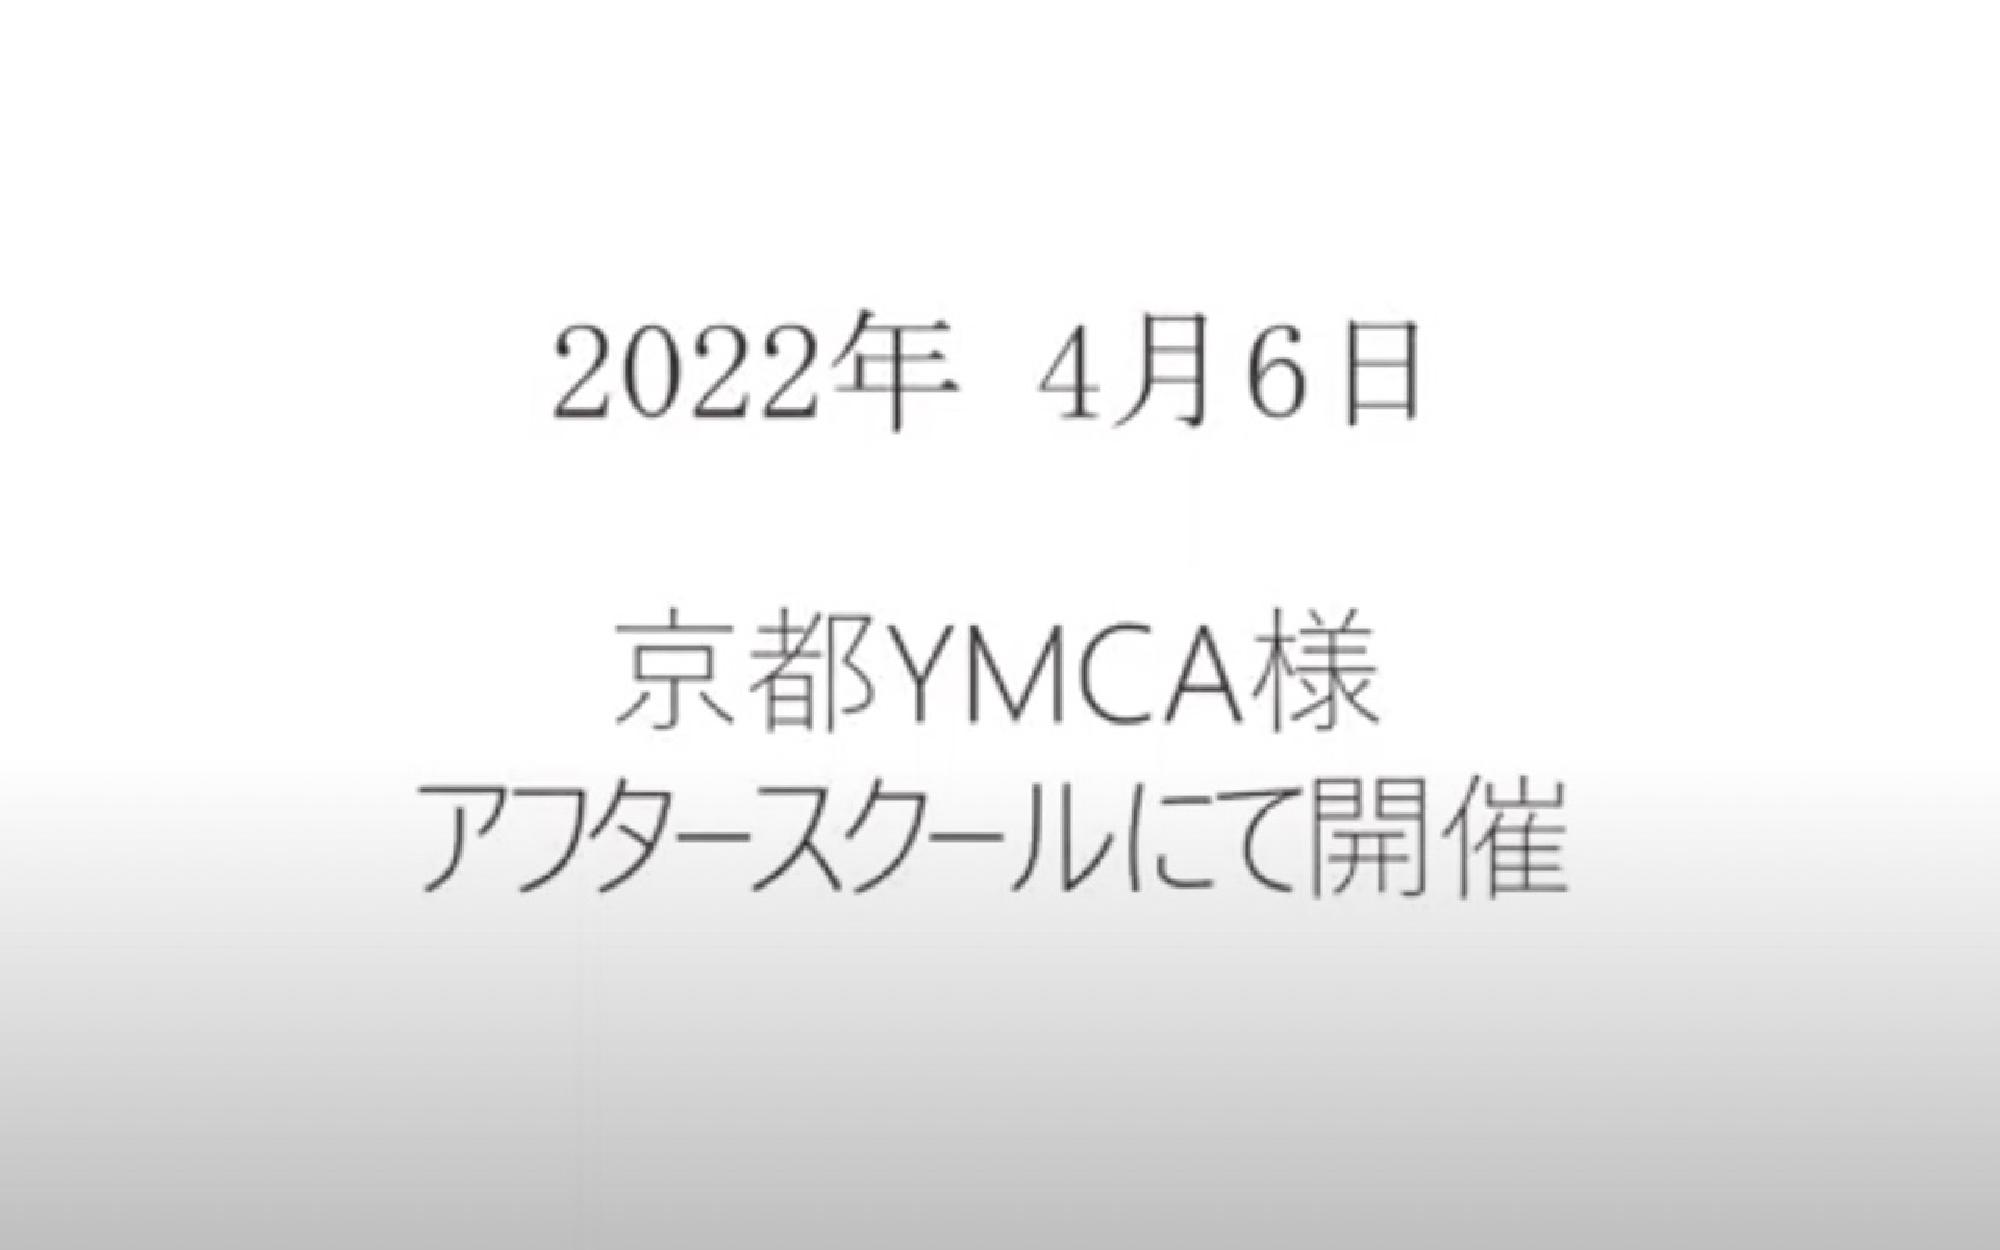  2022年4月6日 ワークショップ映像 YMCA様 